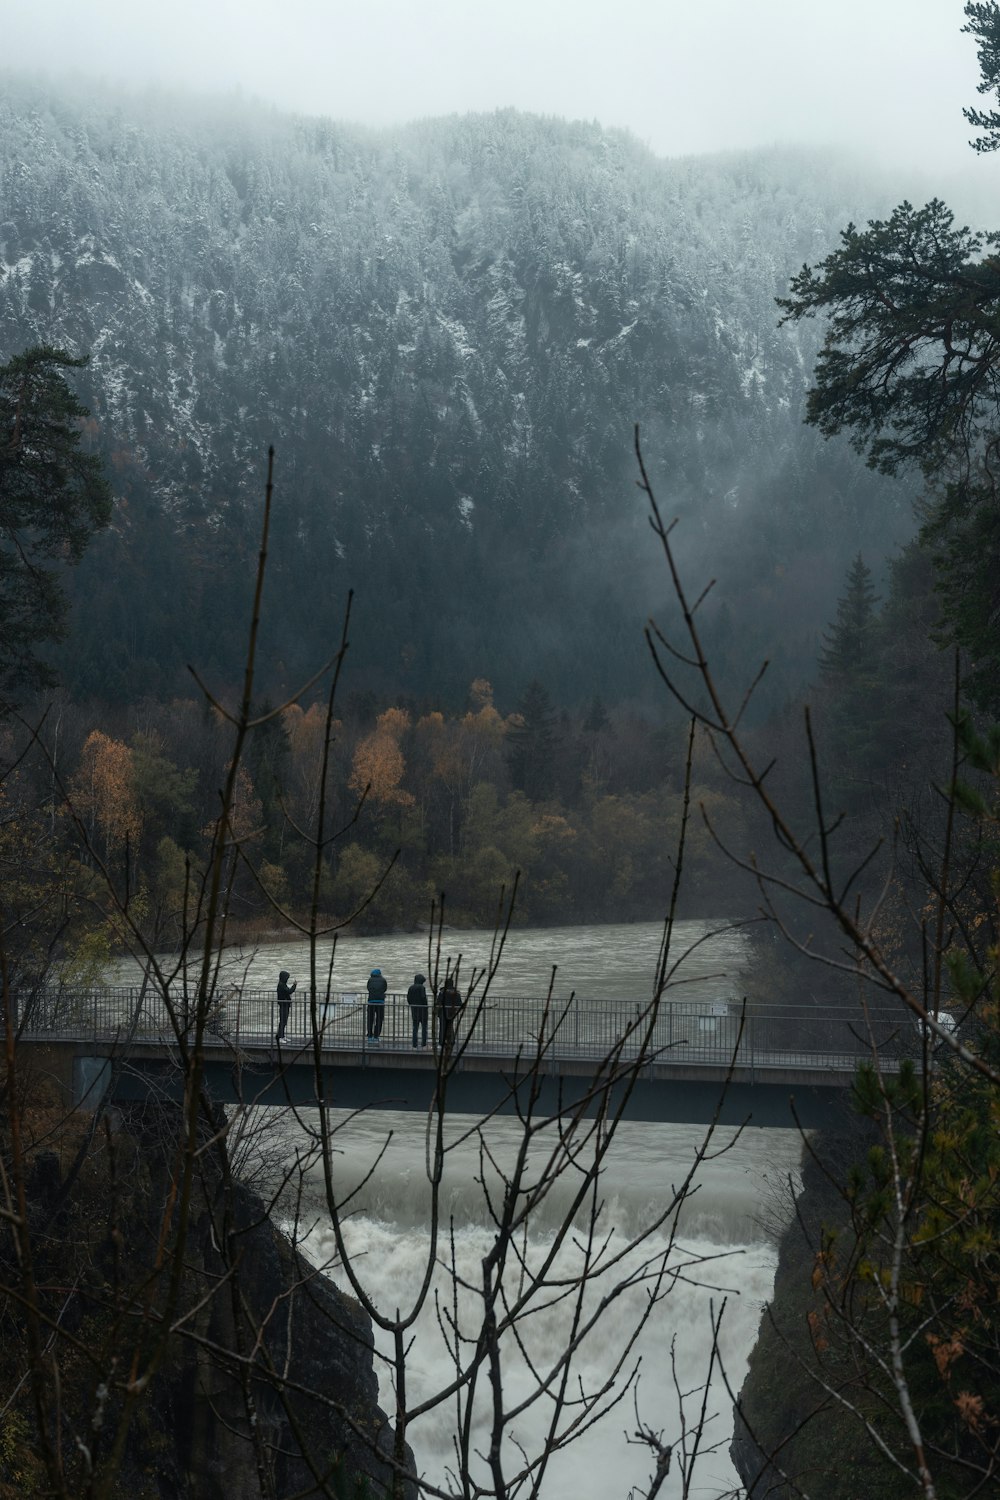 강을 가로지르는 다리 위에 서 있는 한 무리의 사람들